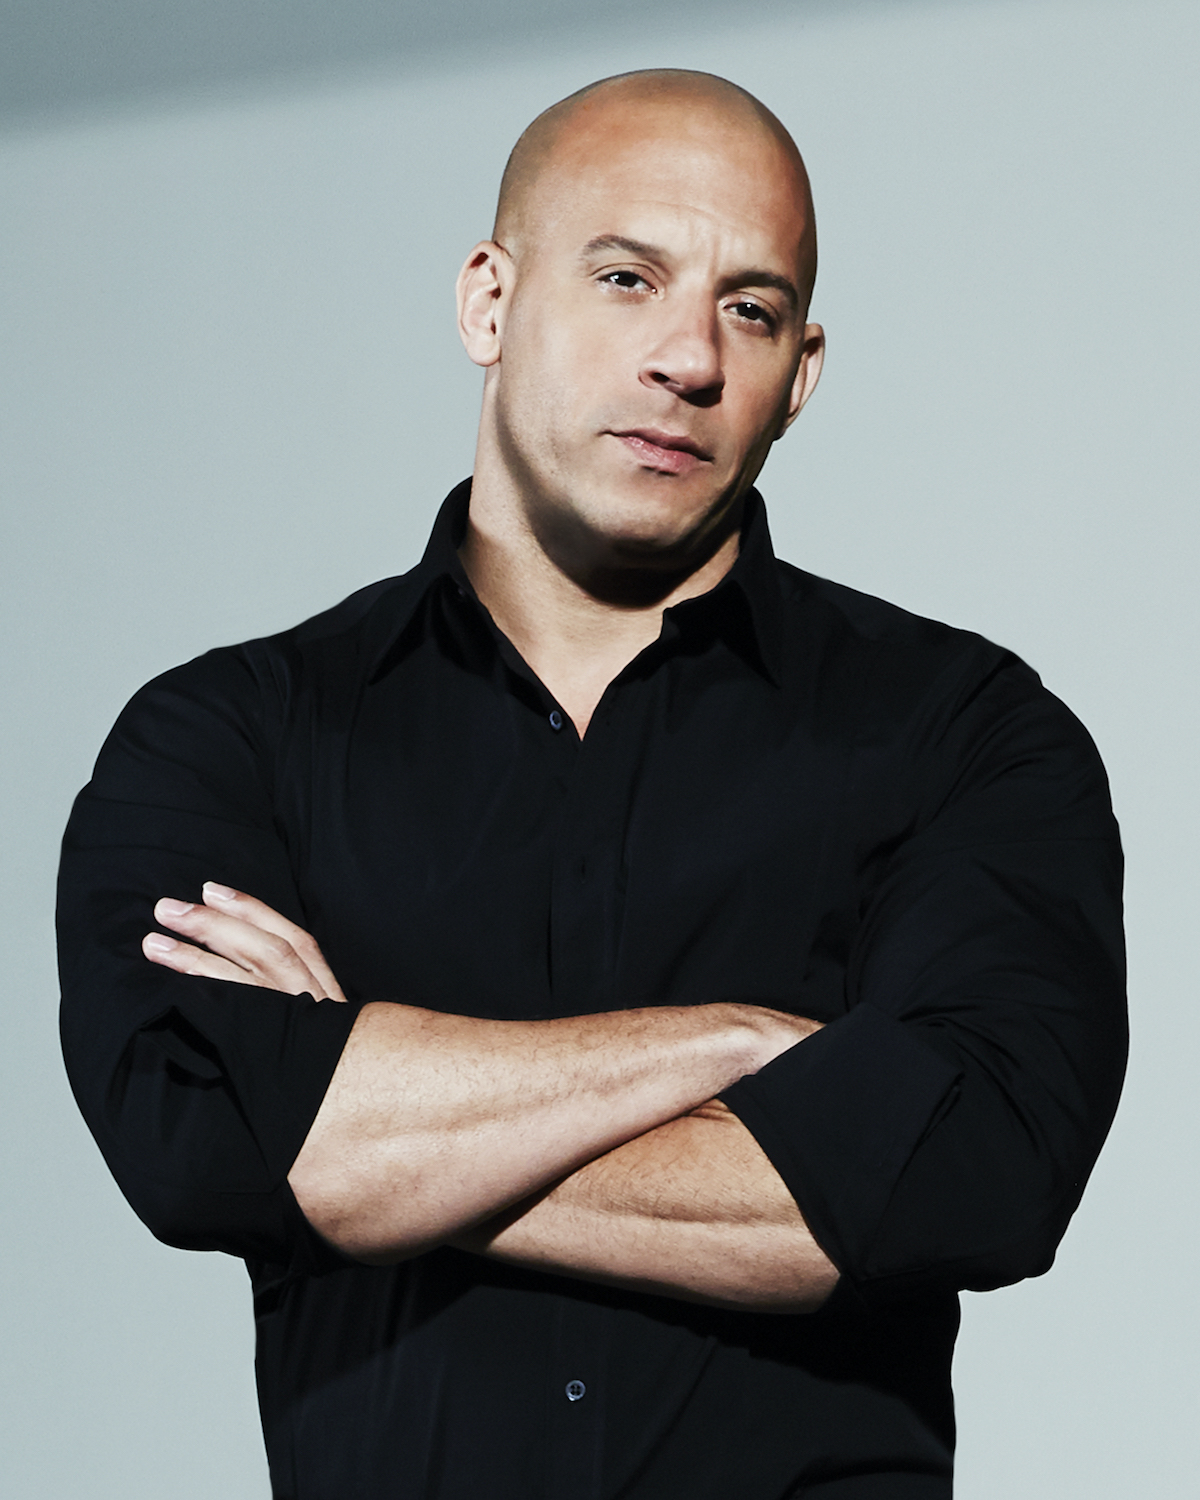 Vin Diesel starring in Riddick - Furya sequel